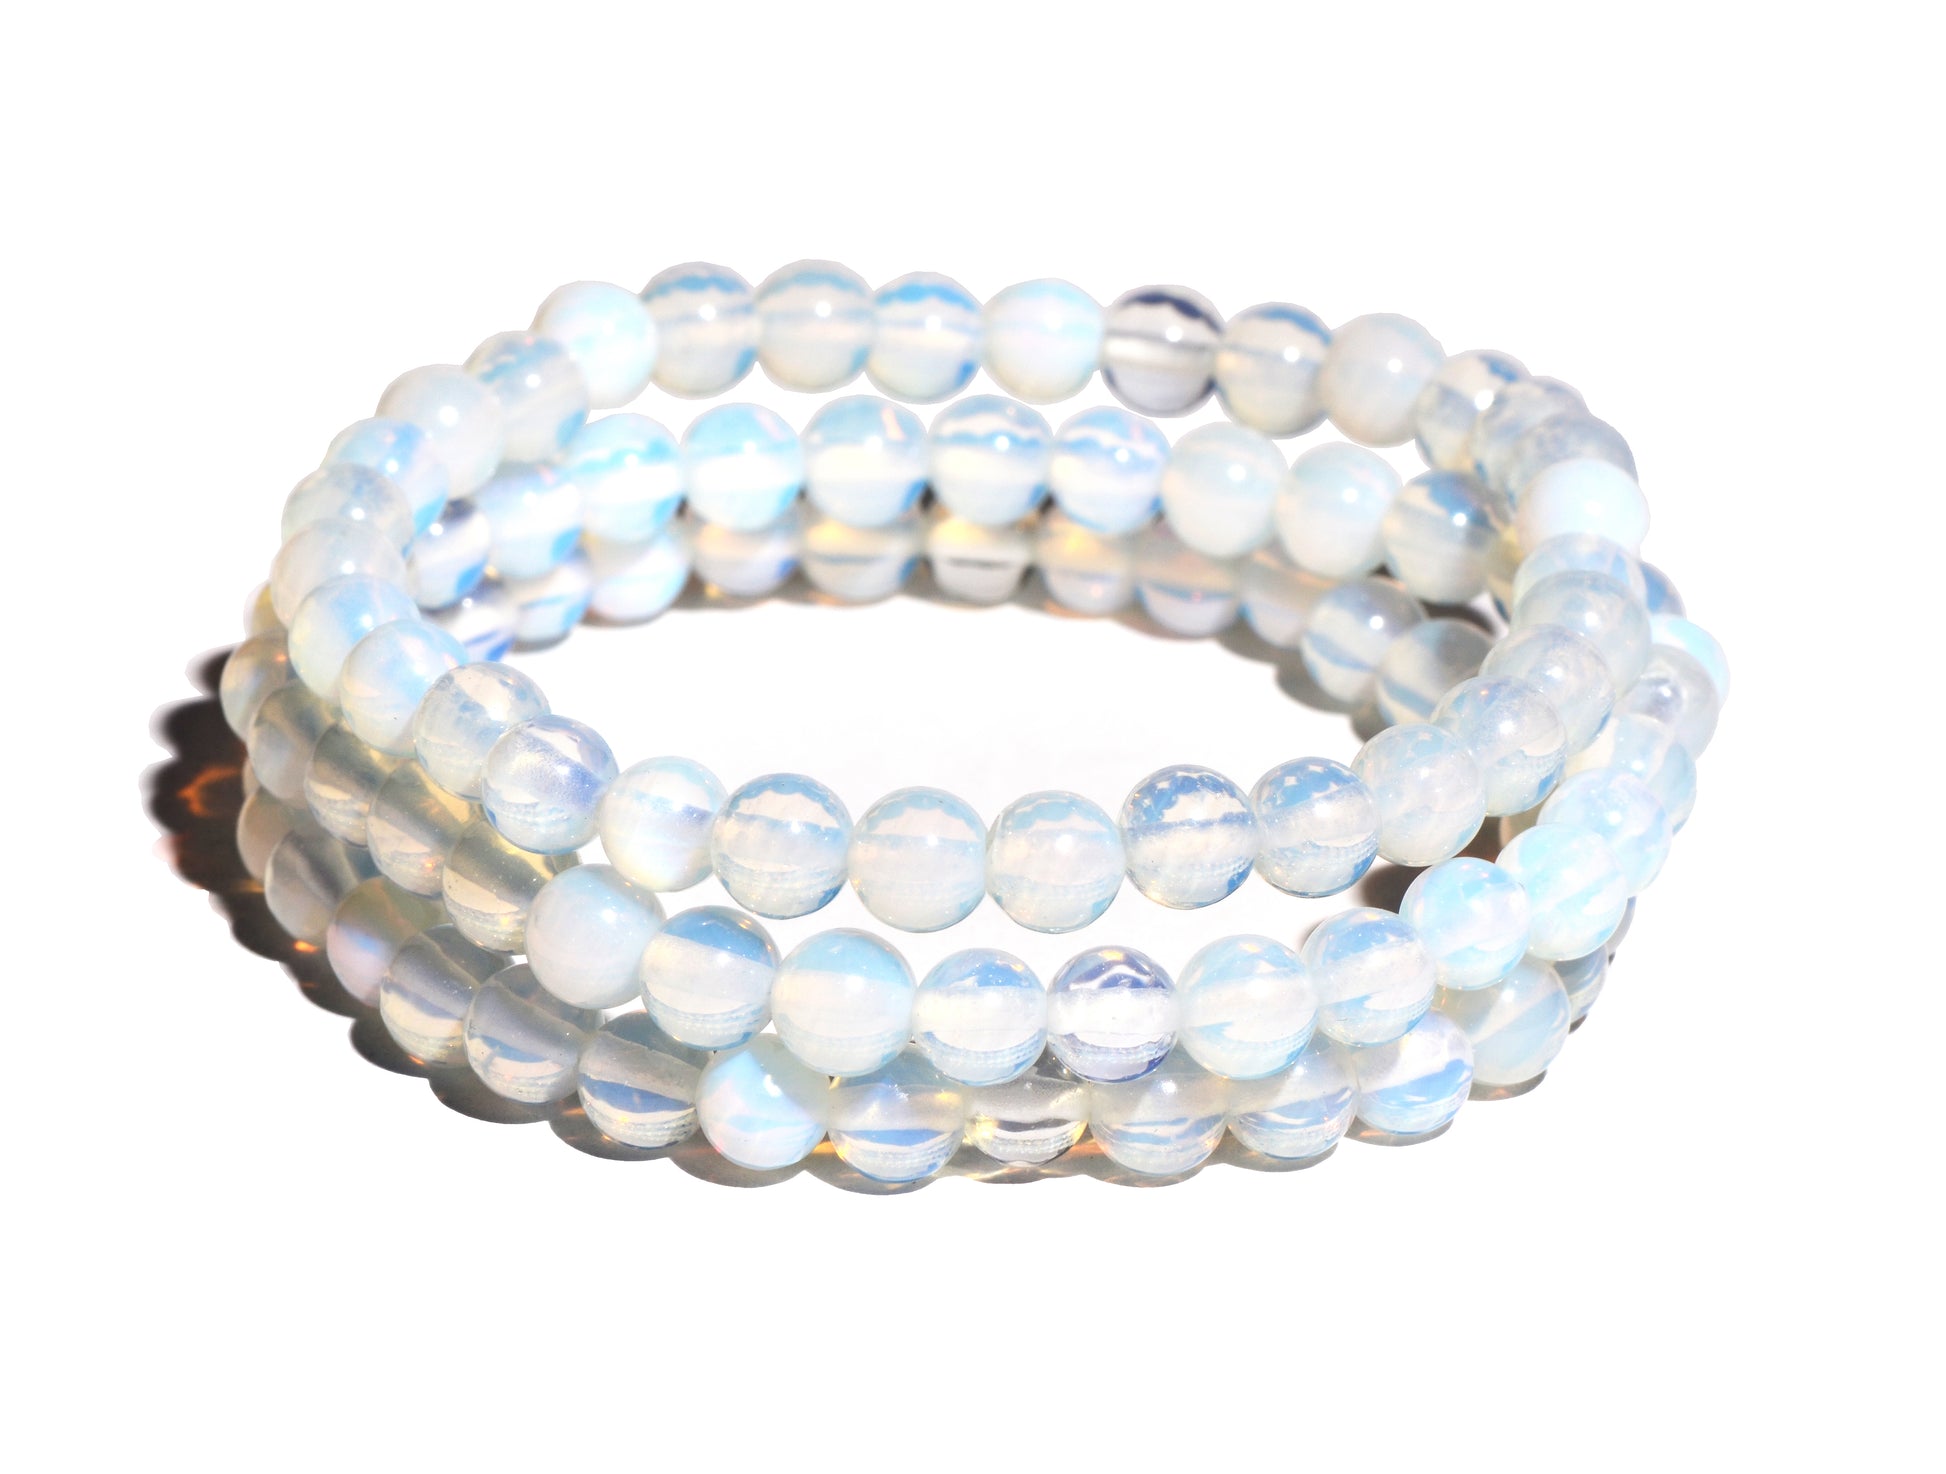 Opalite Beaded Bracelet - Small Beads - Polished